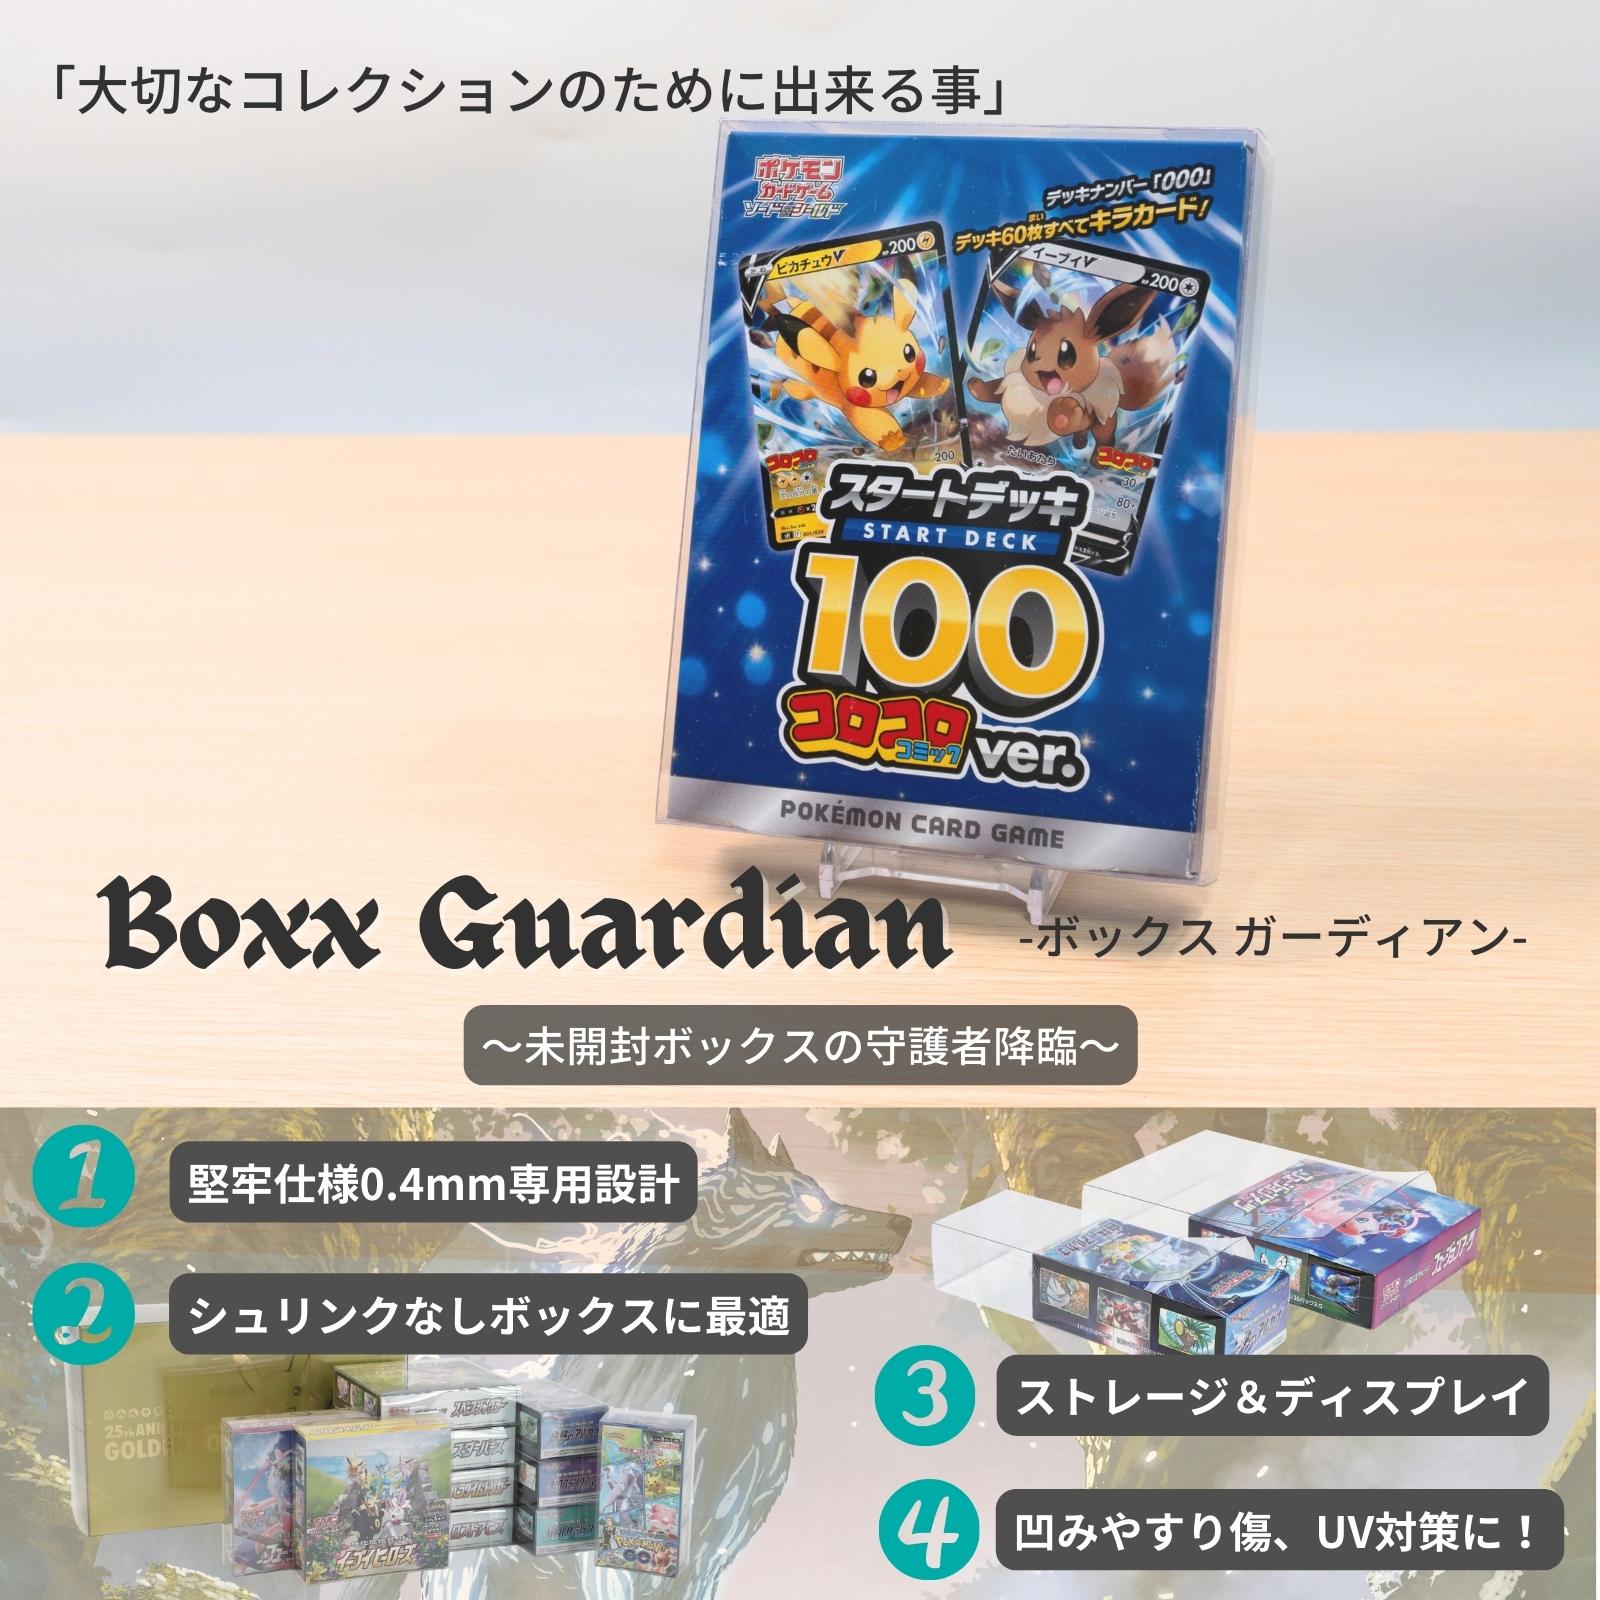 Boxx Guardian ポケモンカードBOX用 スタートデッキ100コロコロ ...